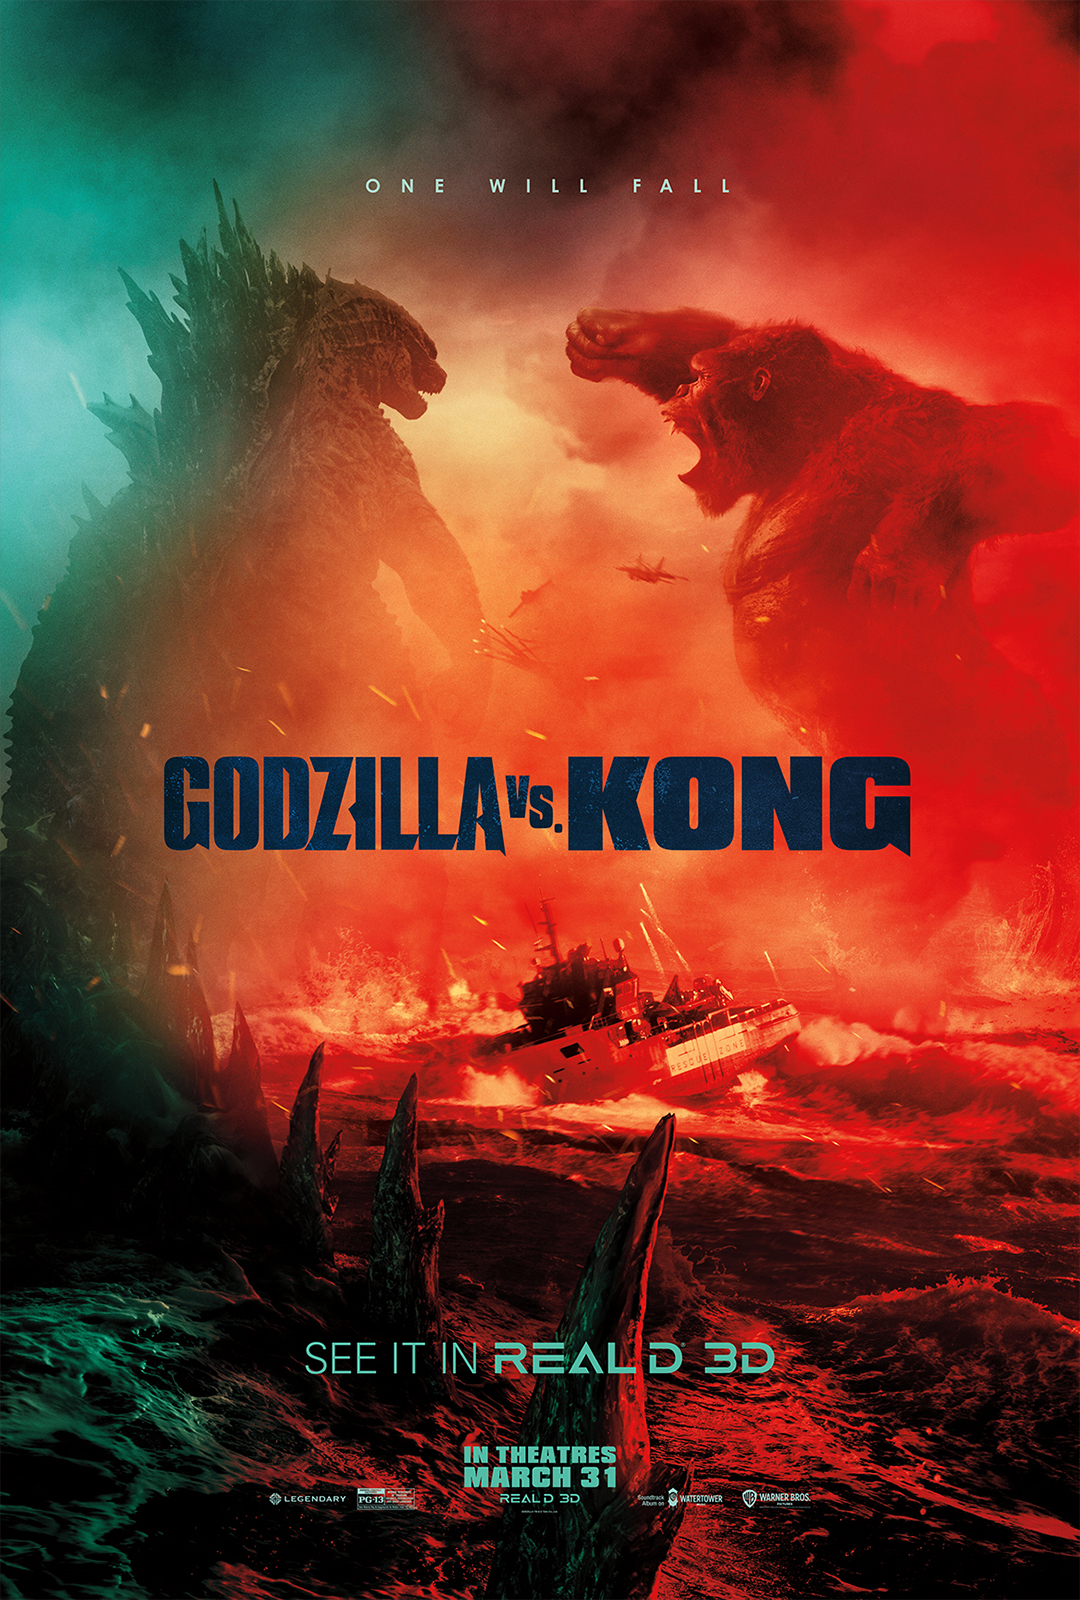 General 1080x1600 Godzilla Vs Kong Godzilla King Kong movies battle kaiju creature movie poster digital art portrait display